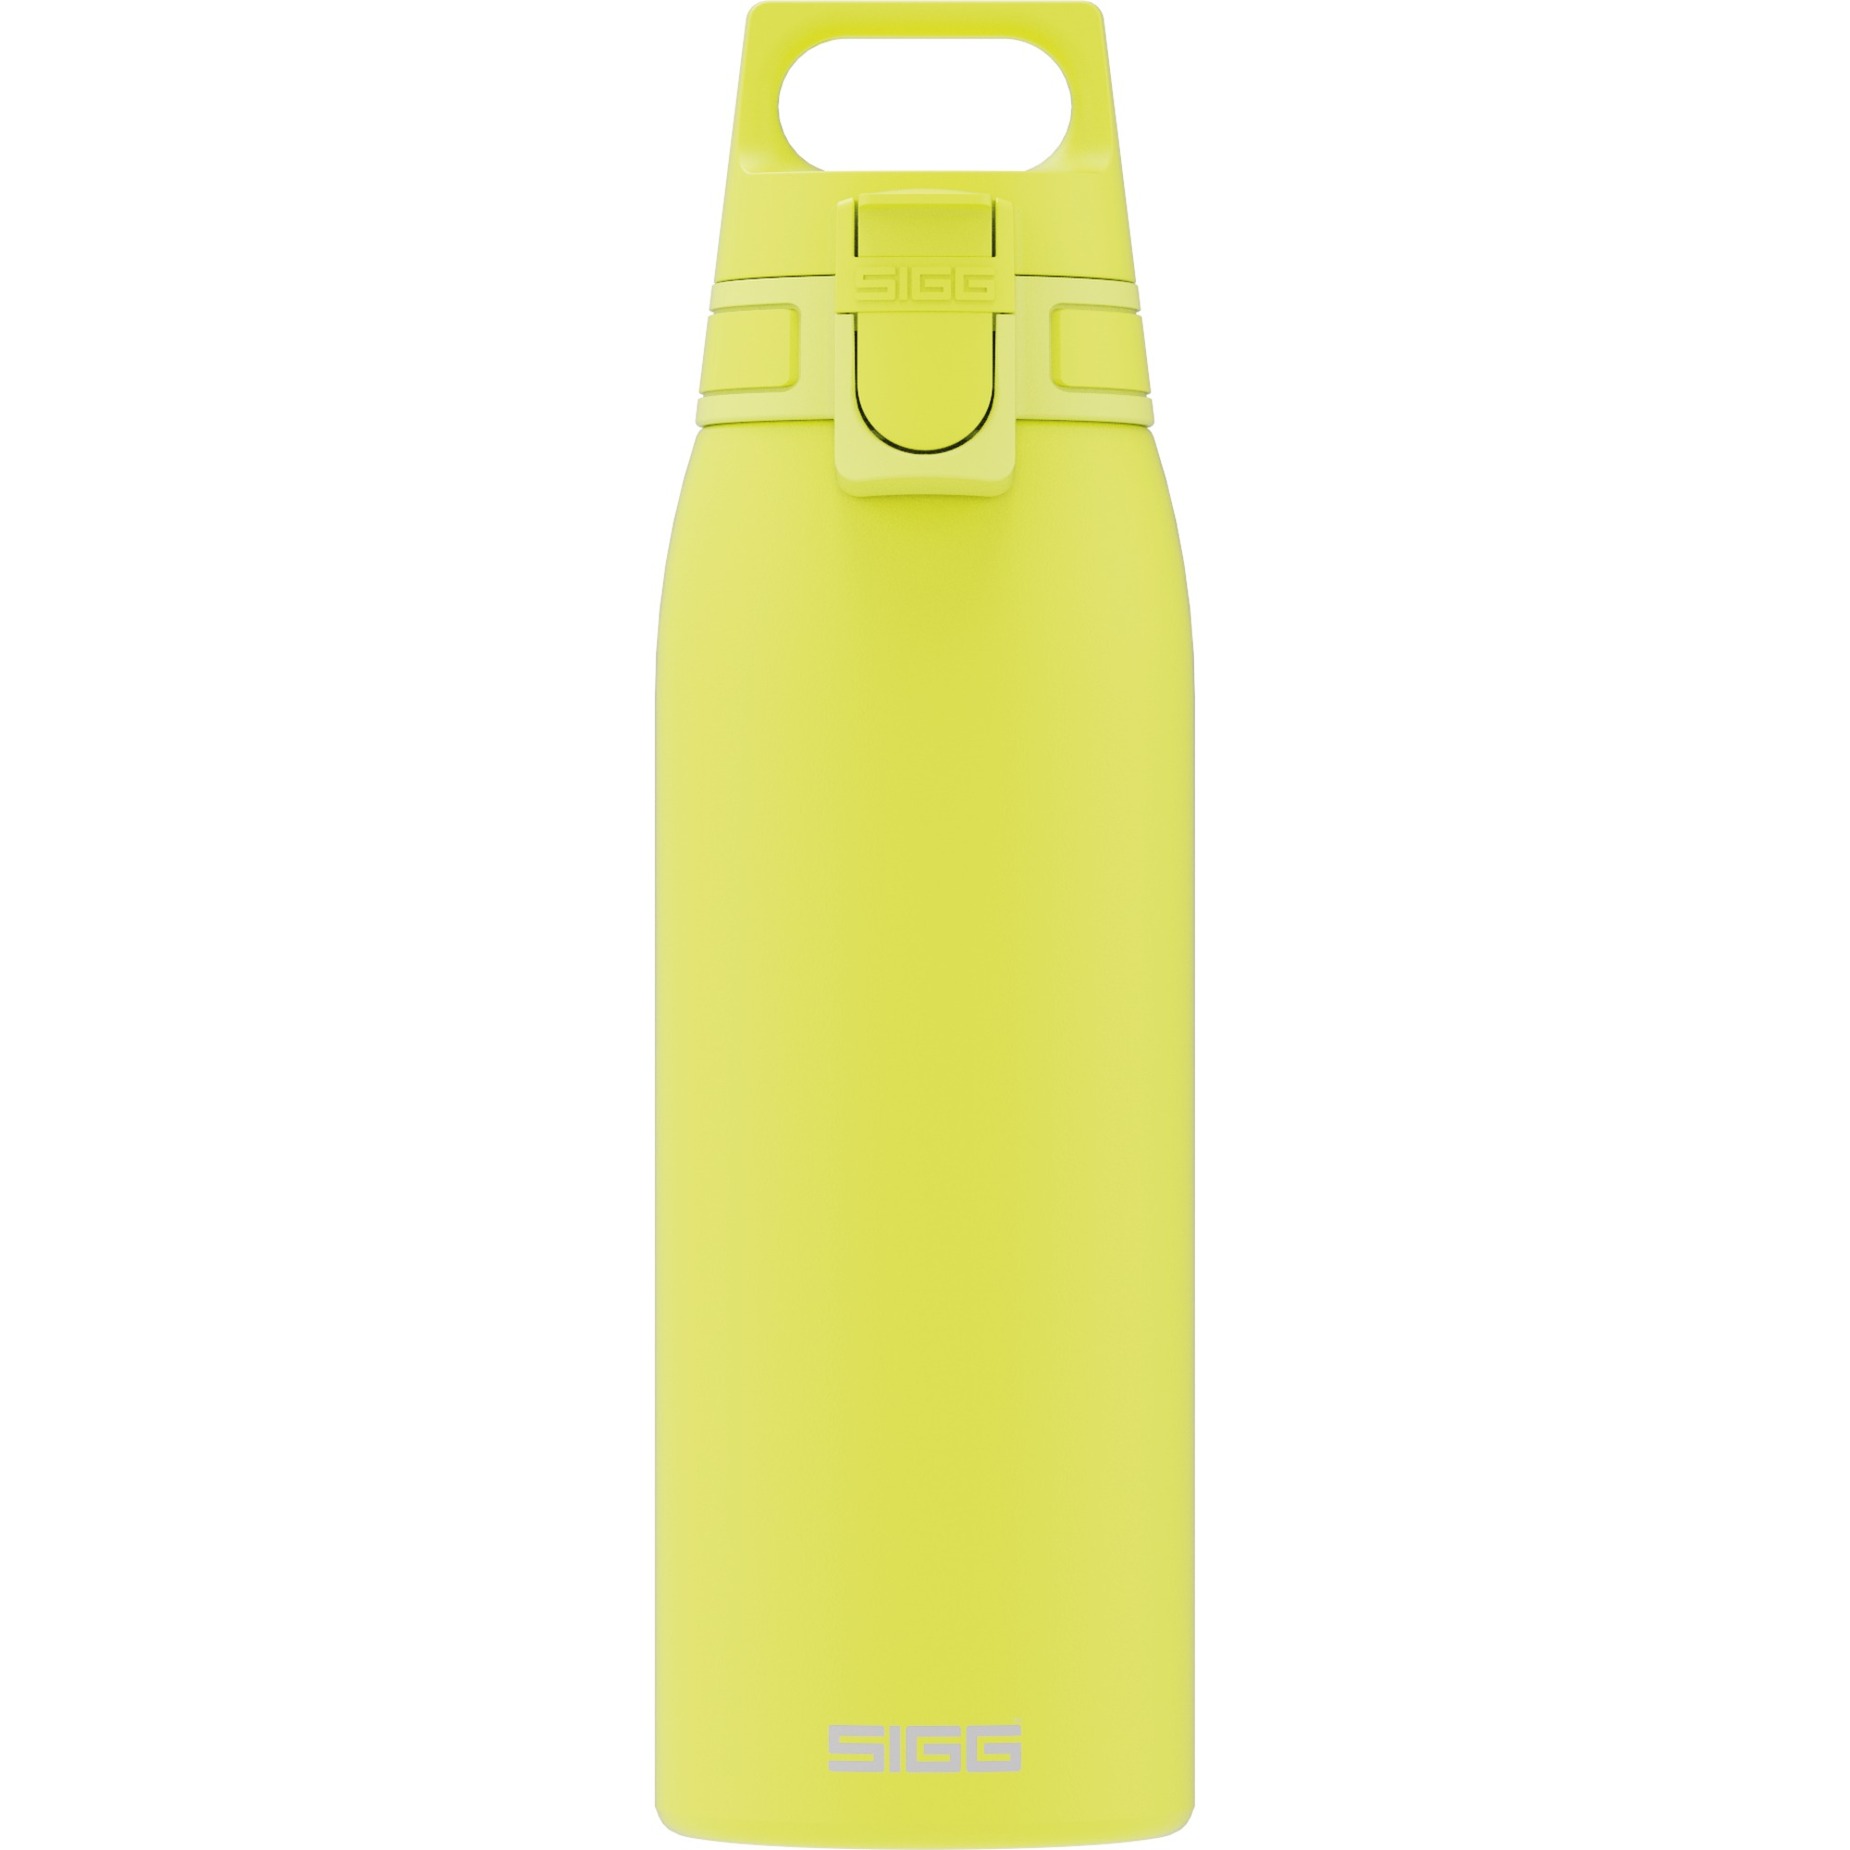 Image of Alternate - Trinkflasche Shield One Ultra Lemon 1L online einkaufen bei Alternate